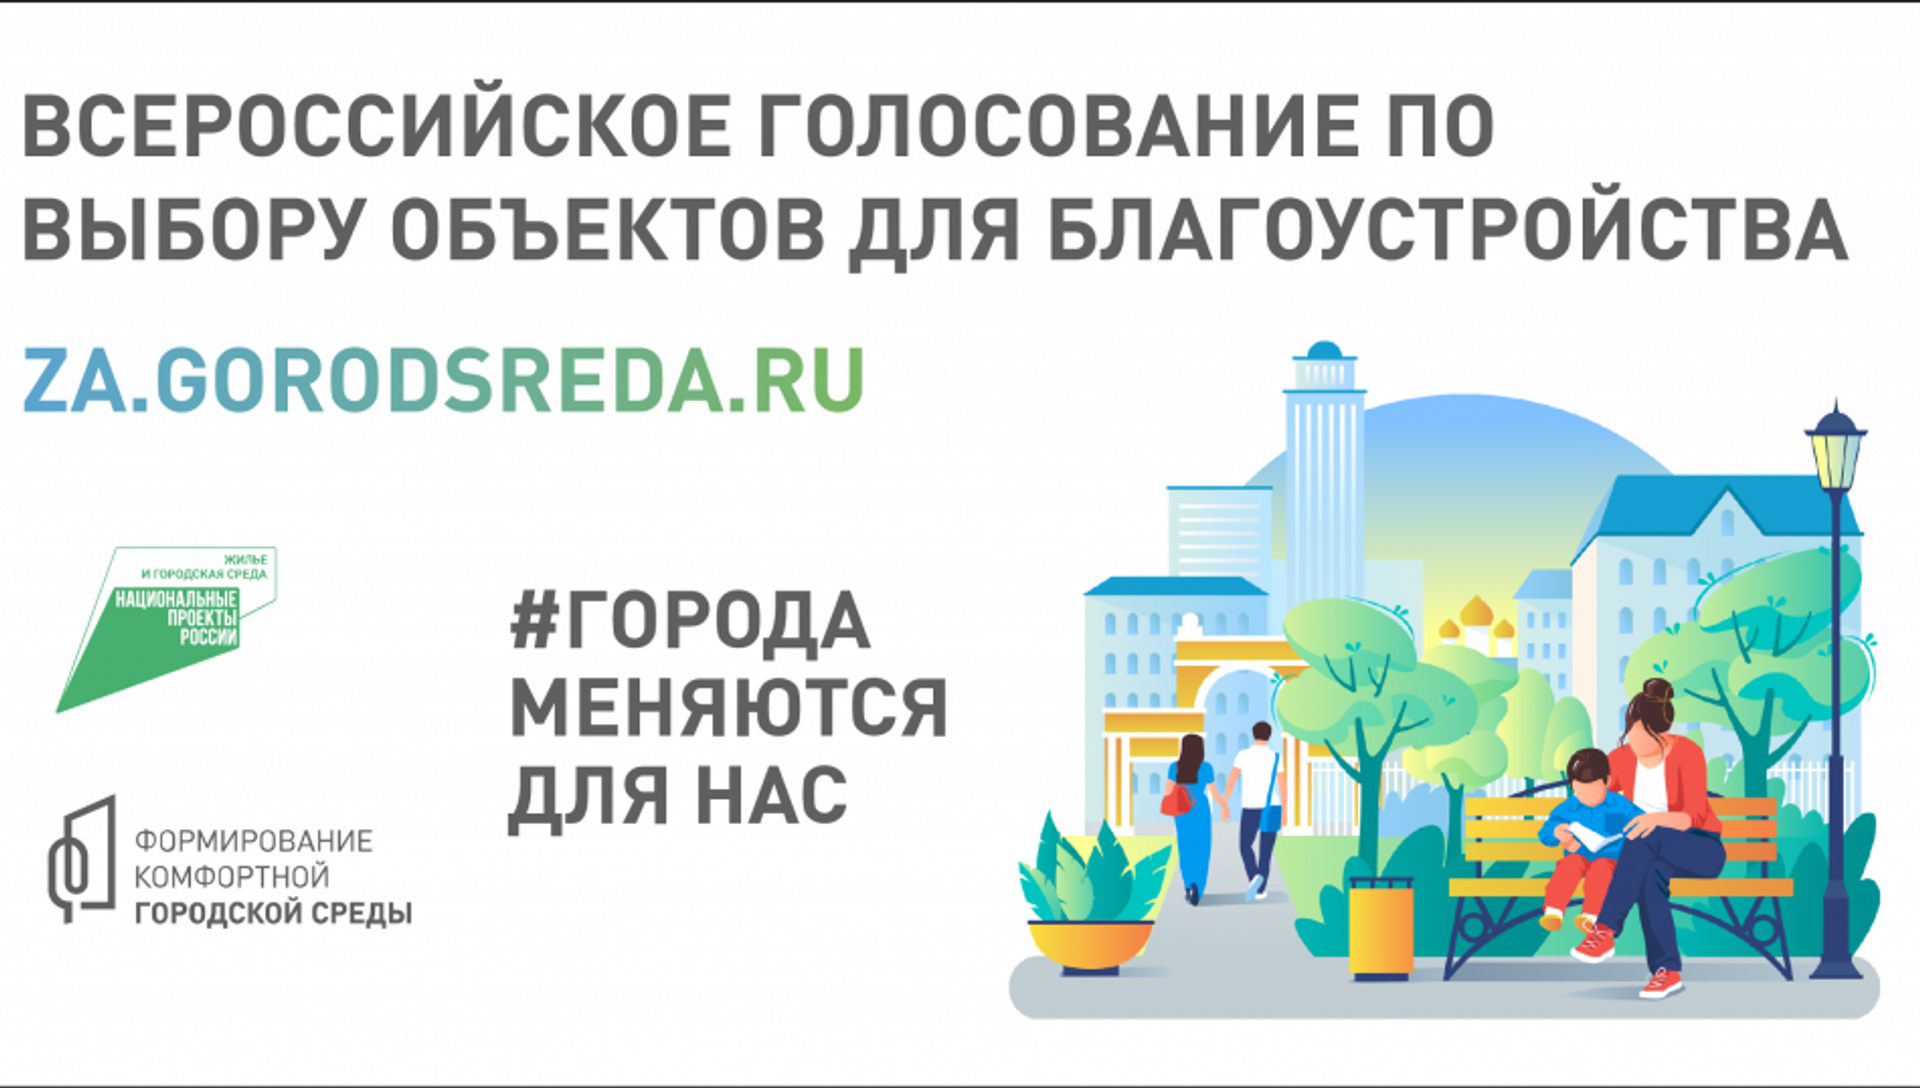 9 территорий Симферополя участвуют в голосовании по благоустройству - РИА Новости Крым, 03.05.2021